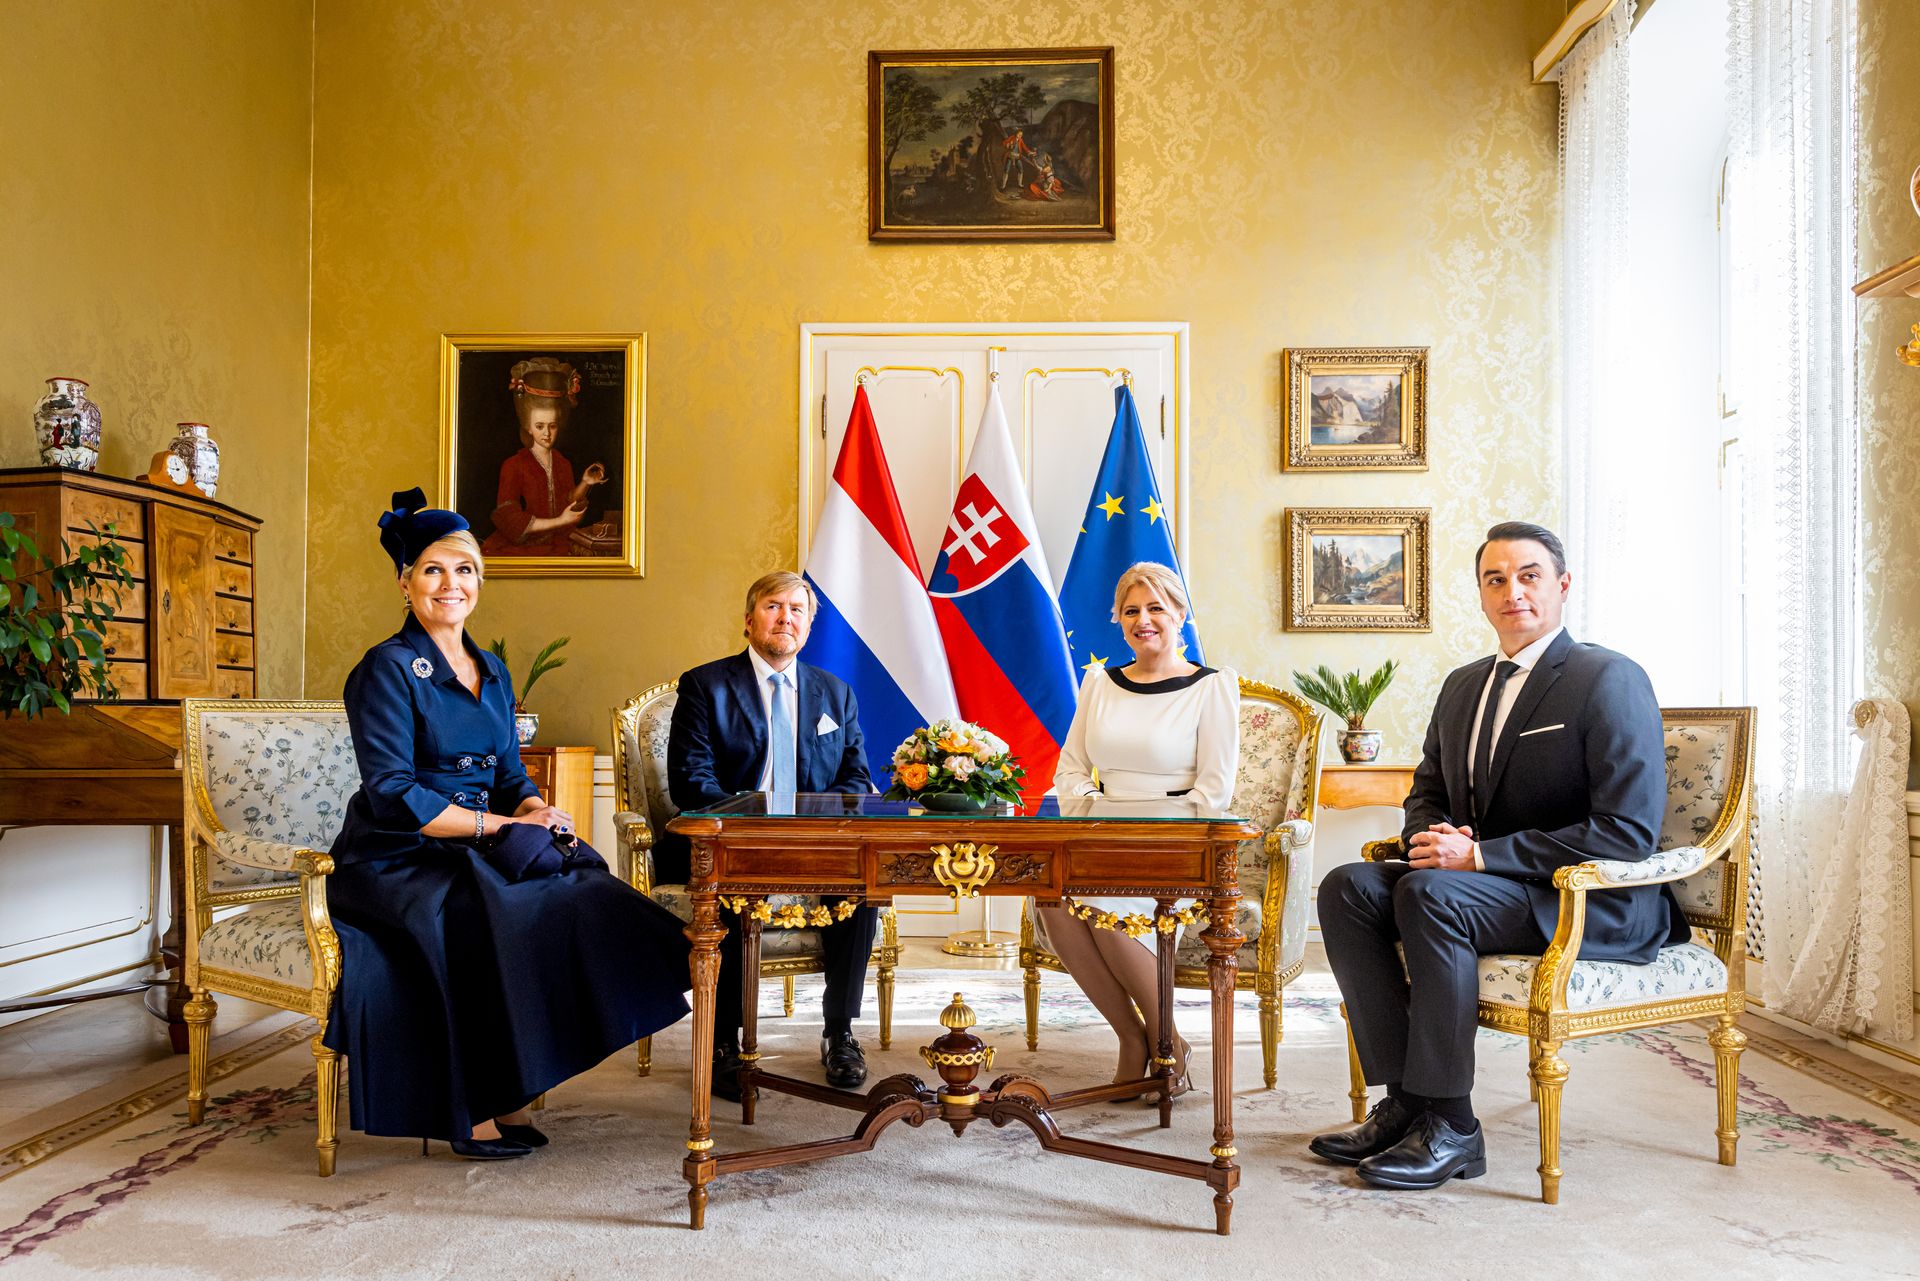 Willem-Alexander Máxima staatsbezoek Slowakije